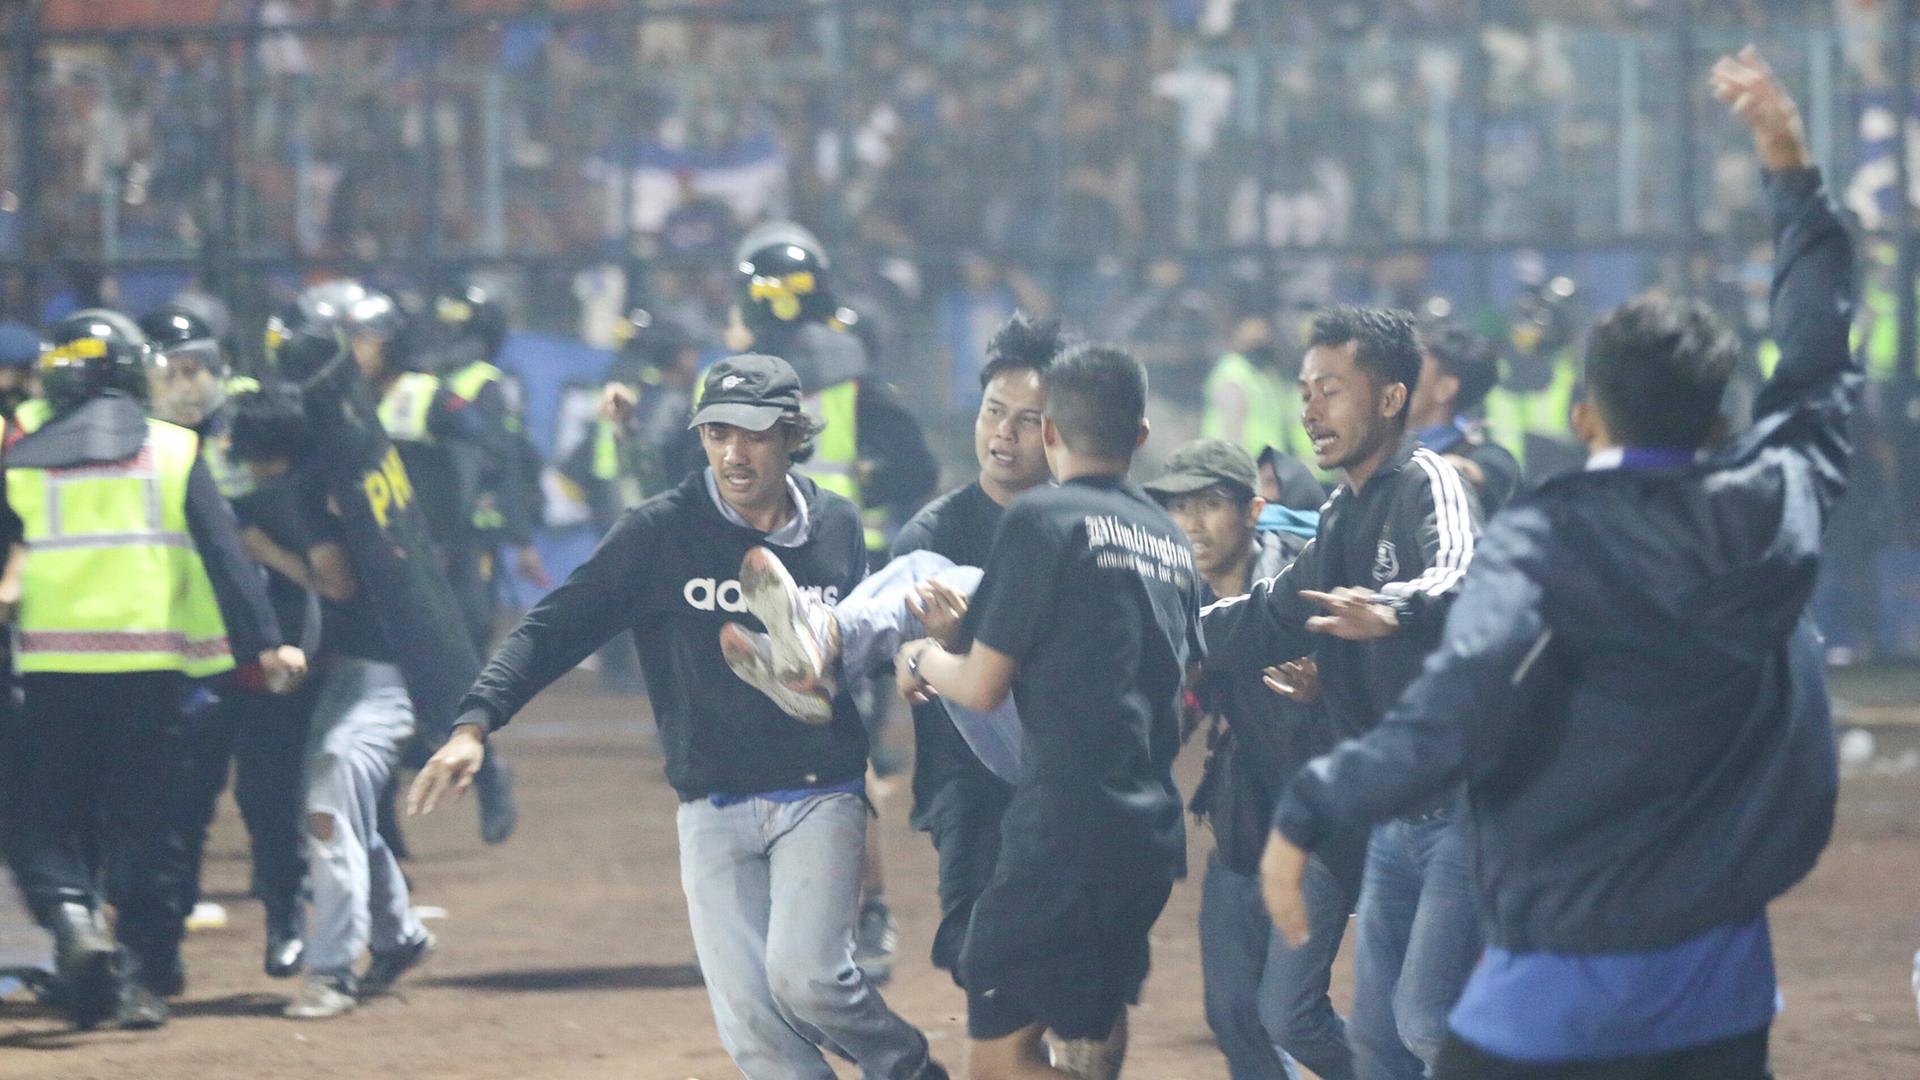 Bei einer Massenpanik in einem Fußball-Stadion in Indonesien sind 125 Menschen ums Leben gekommen.